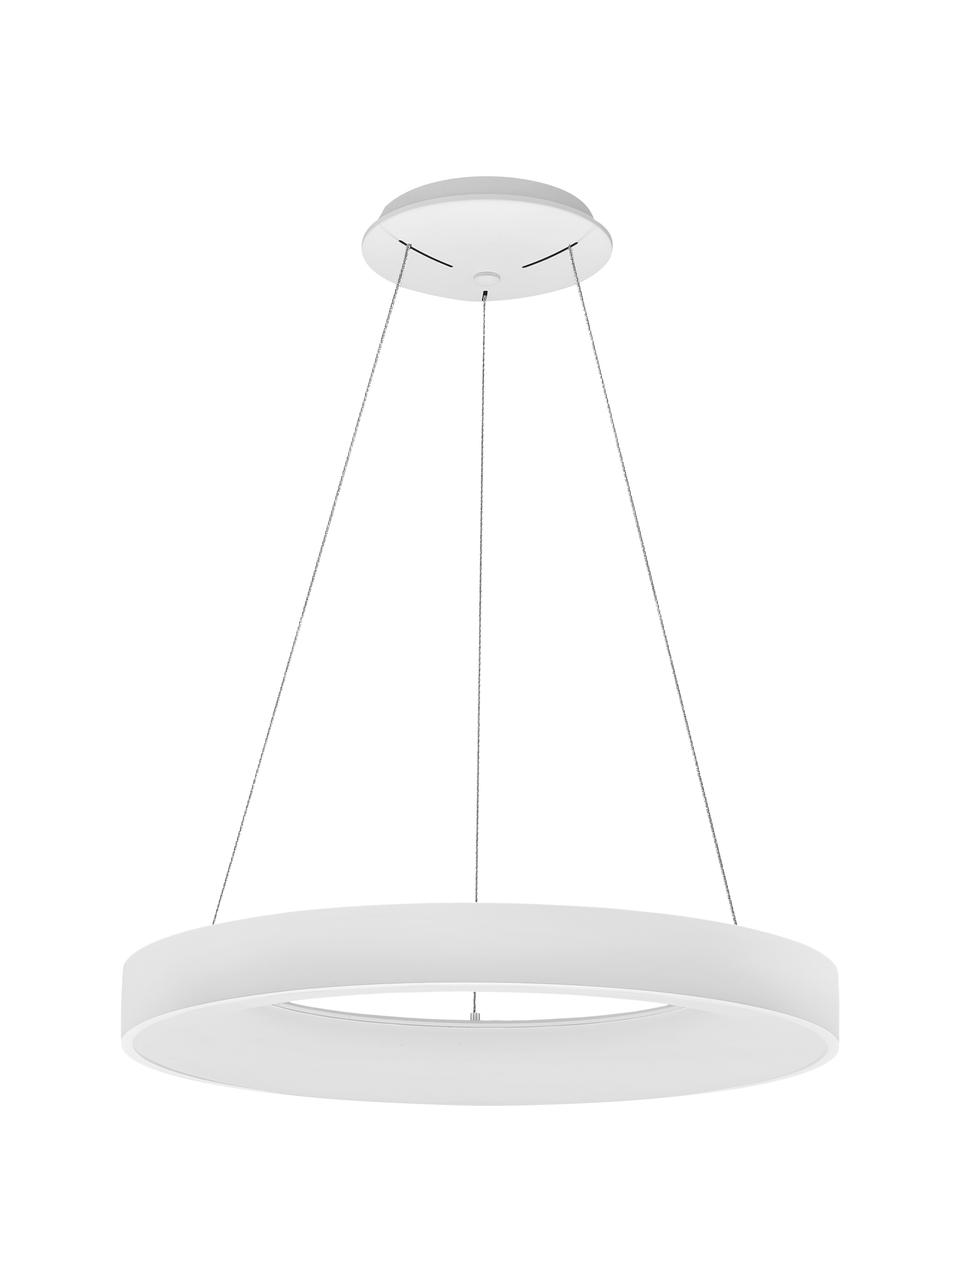 Dimmbare LED-Pendelleuchte Rando in Weiß, Lampenschirm: Aluminium, beschichtet, Baldachin: Aluminium, beschichtet, Weiß, Ø 60 x H 6 cm